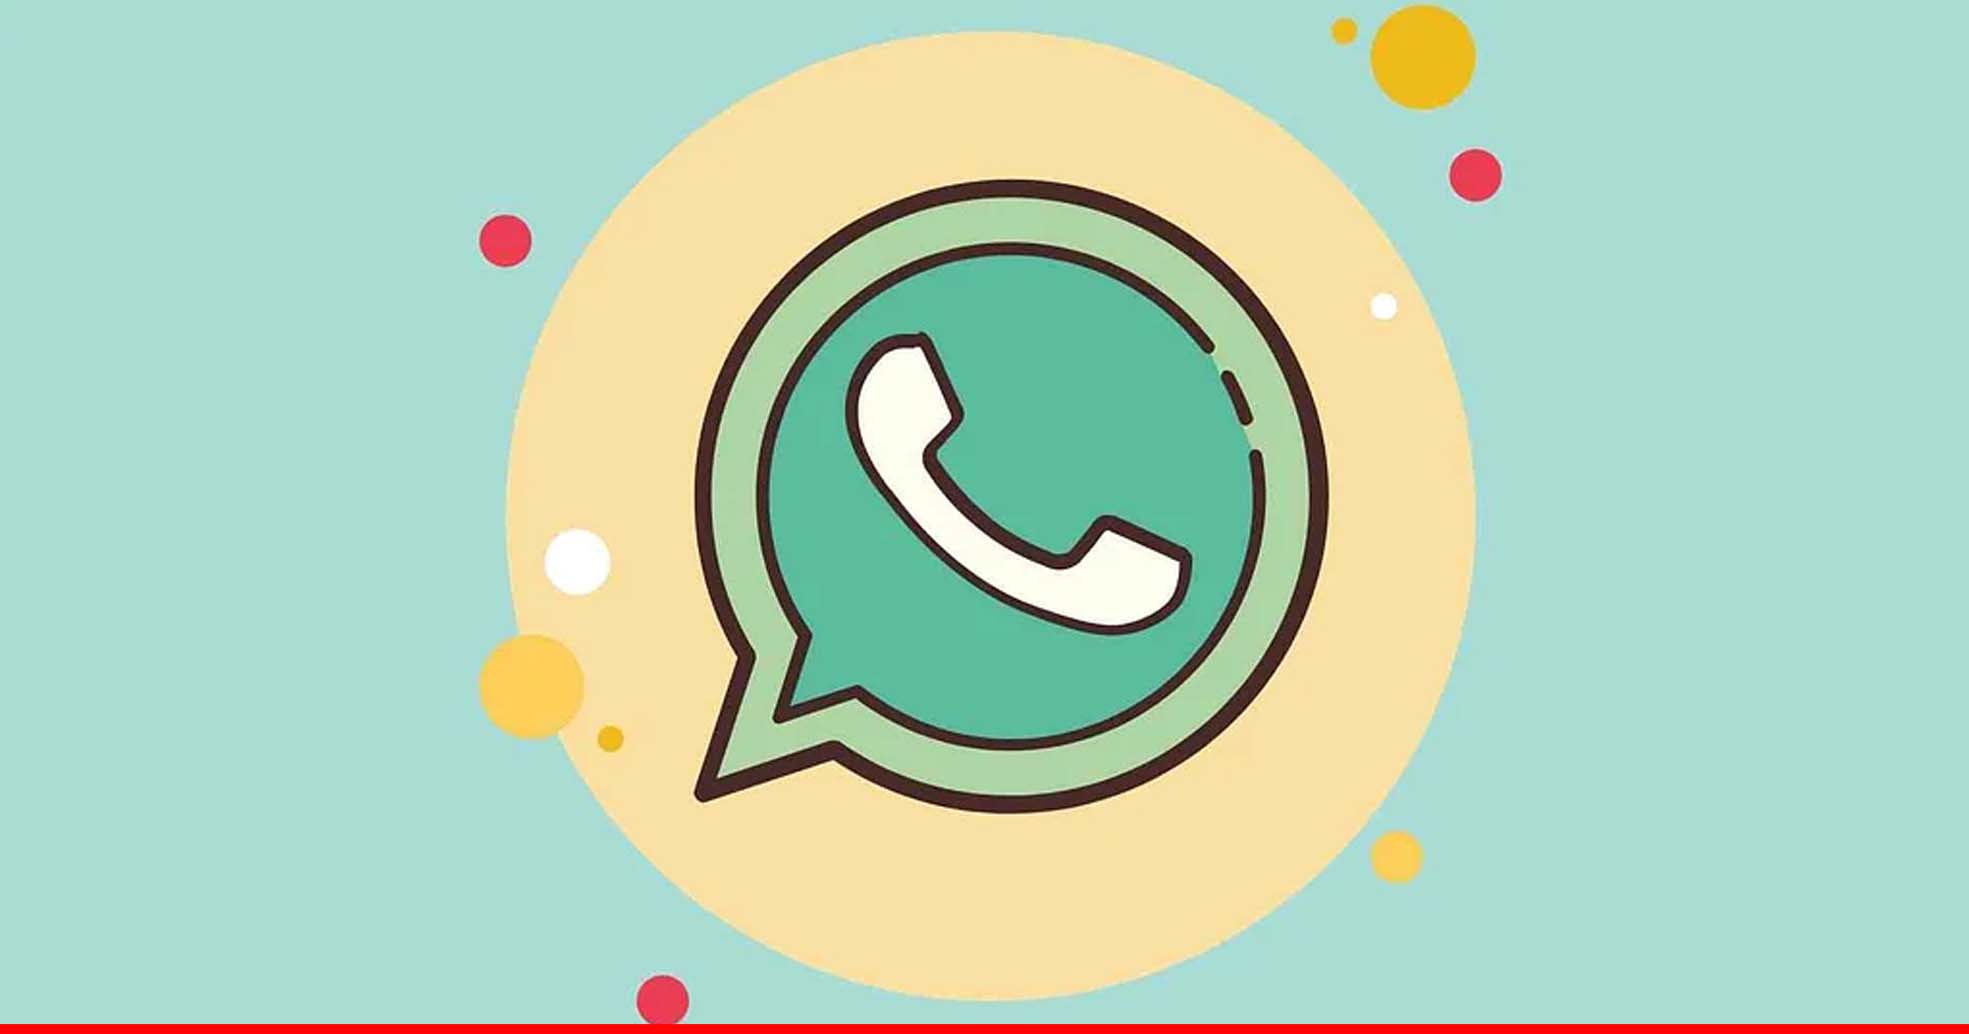 WhatsApp यूजर्स को राहत, कंपनी ने प्राइवेसी पॉलिसी से जुड़ा फैसला लिया वापस